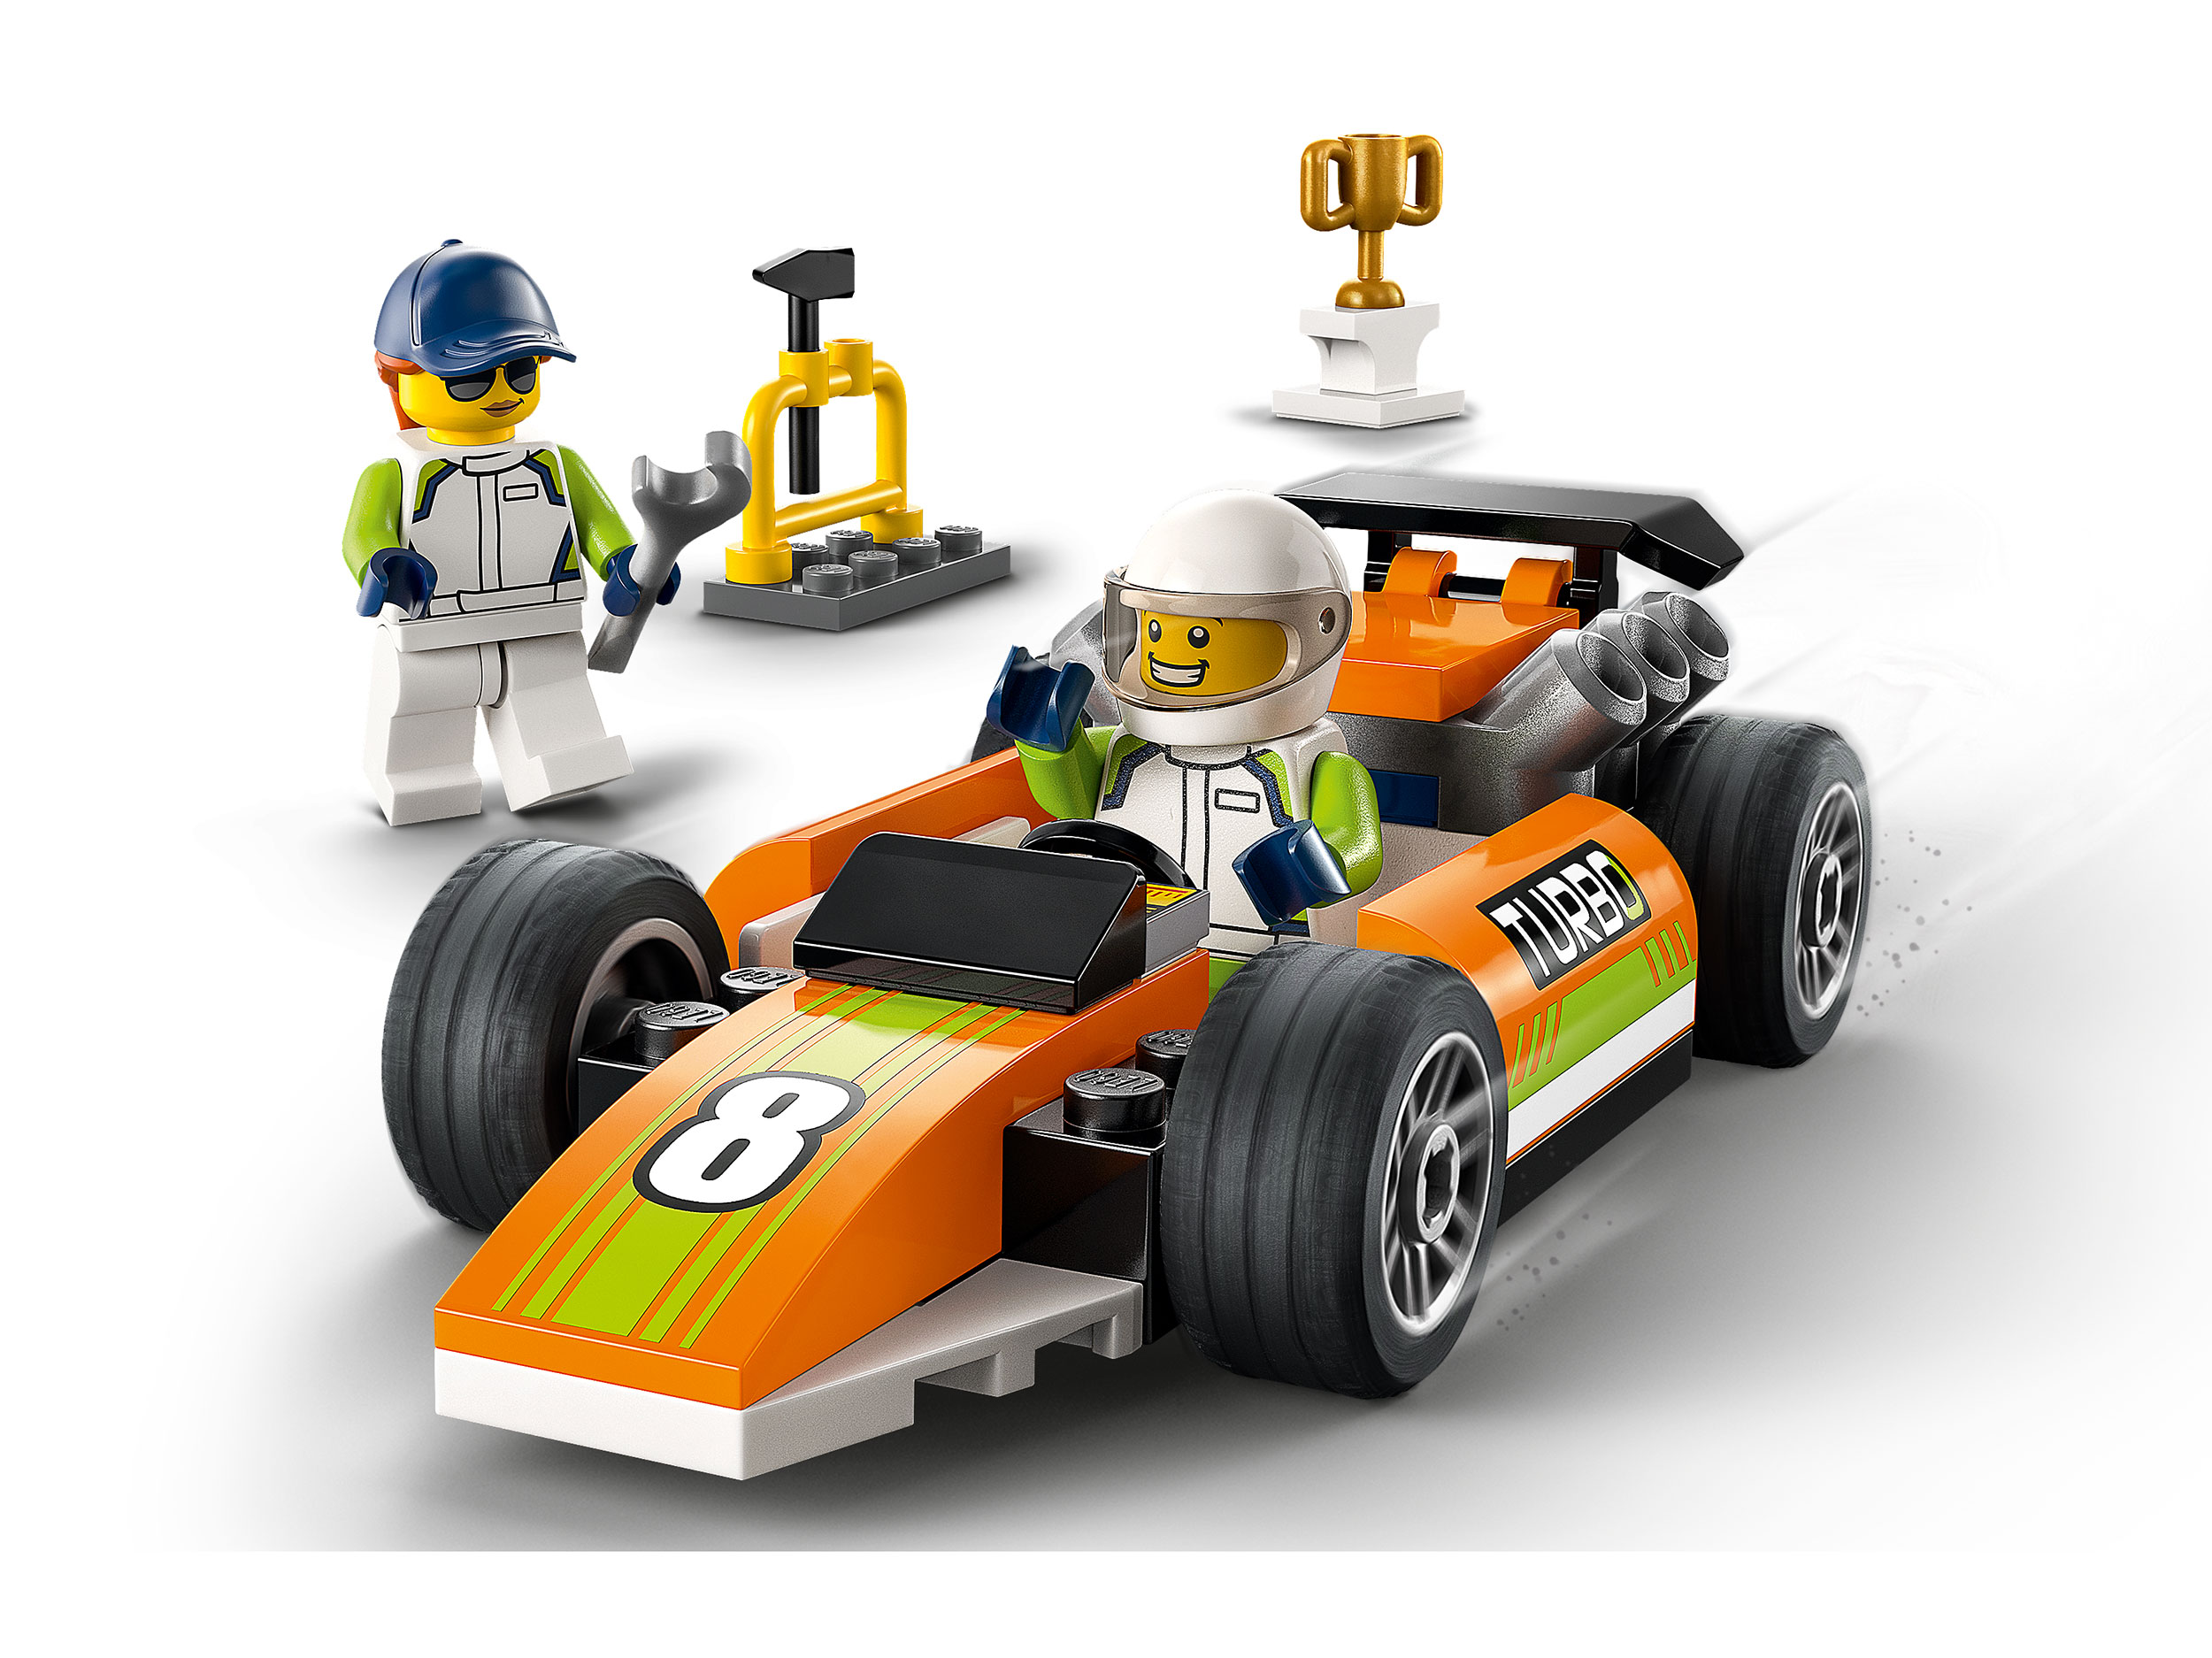 Lego City 60322 Гоночный автомобиль